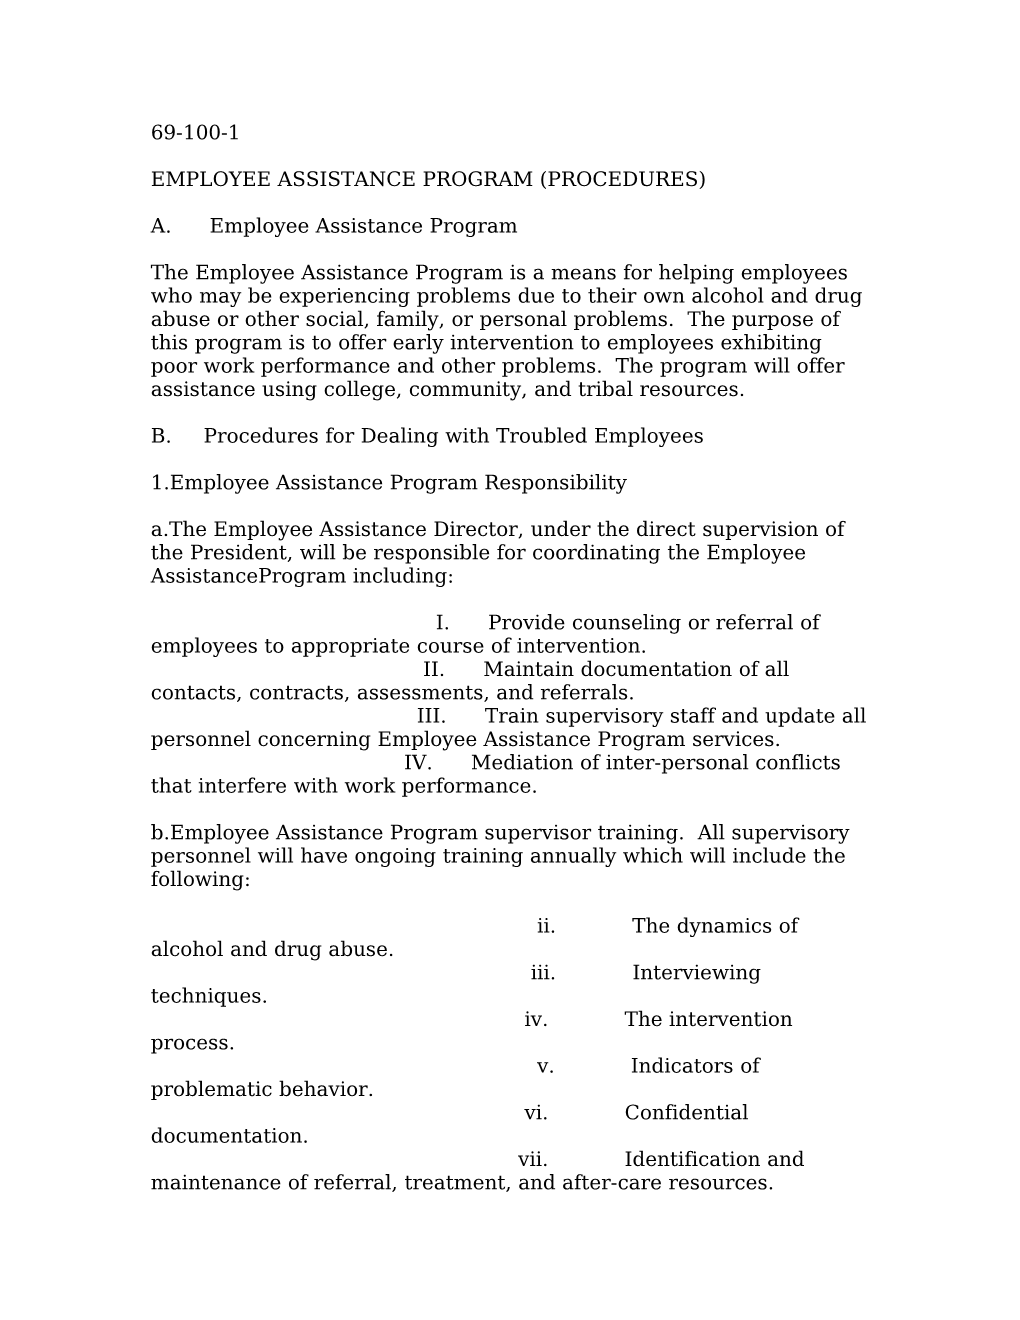 Employee Assistance Program (Procedures)